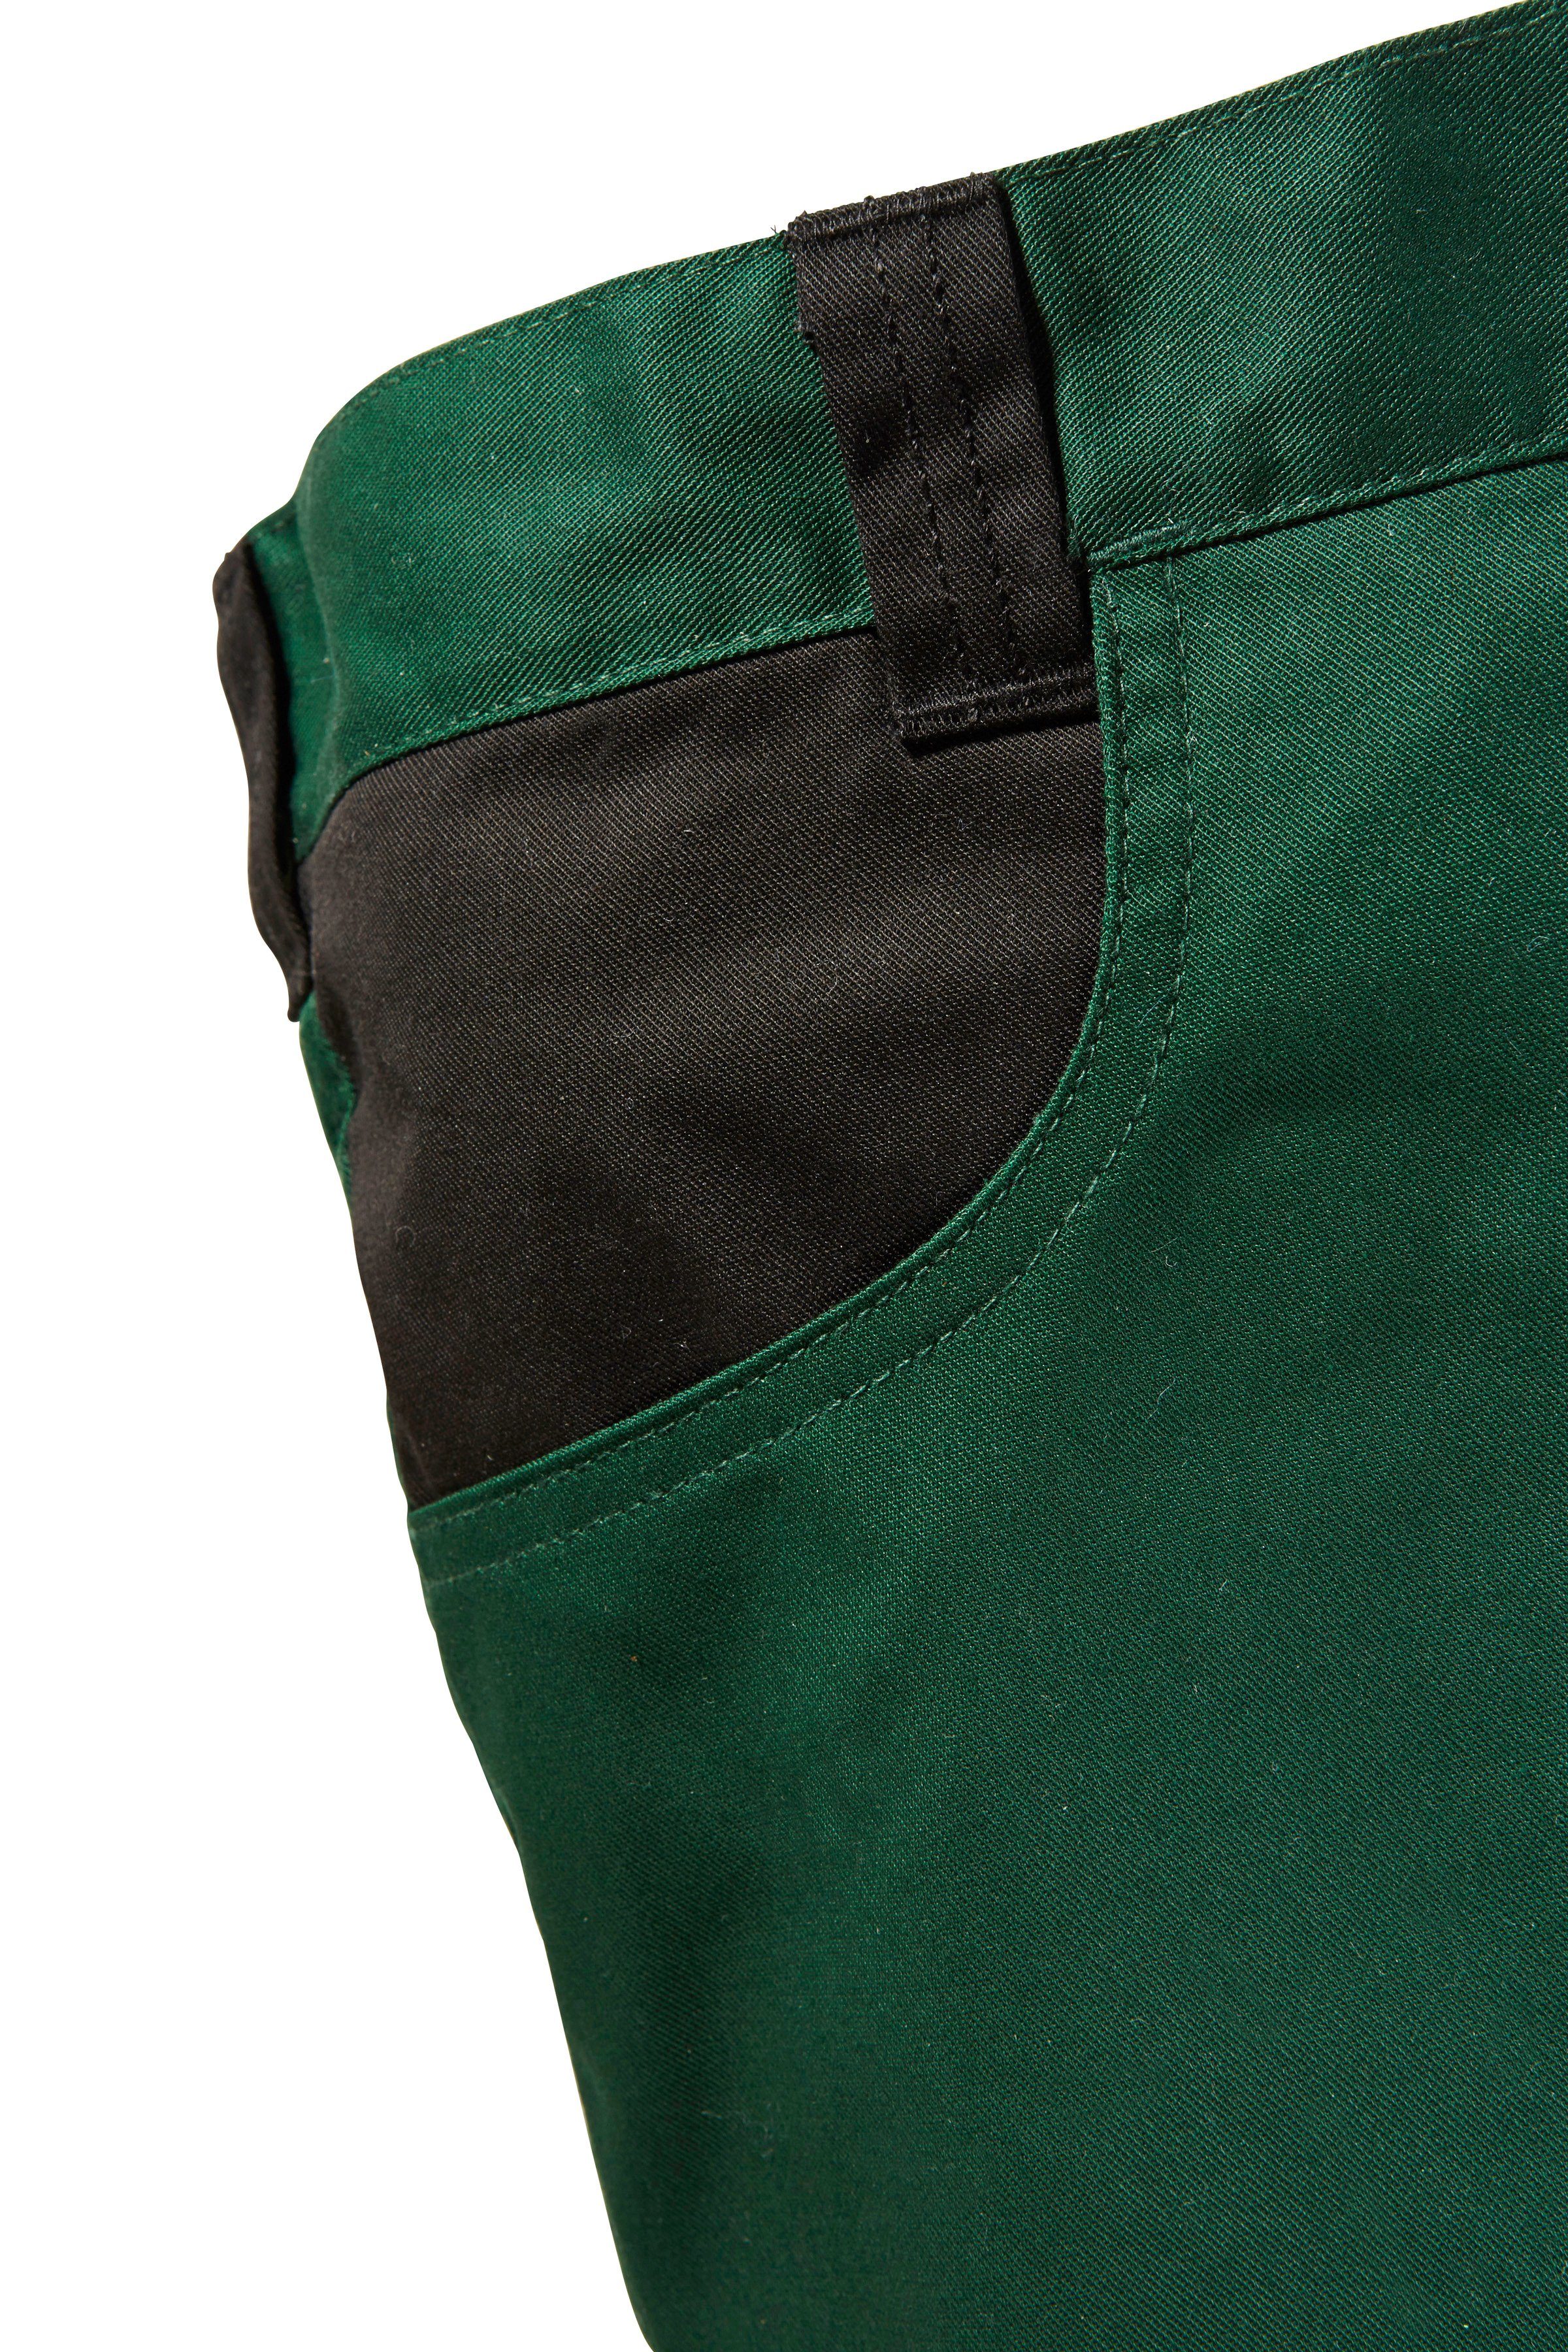 grün-schwarz Pull Arbeitshose safety& mit more Knieverstärkung